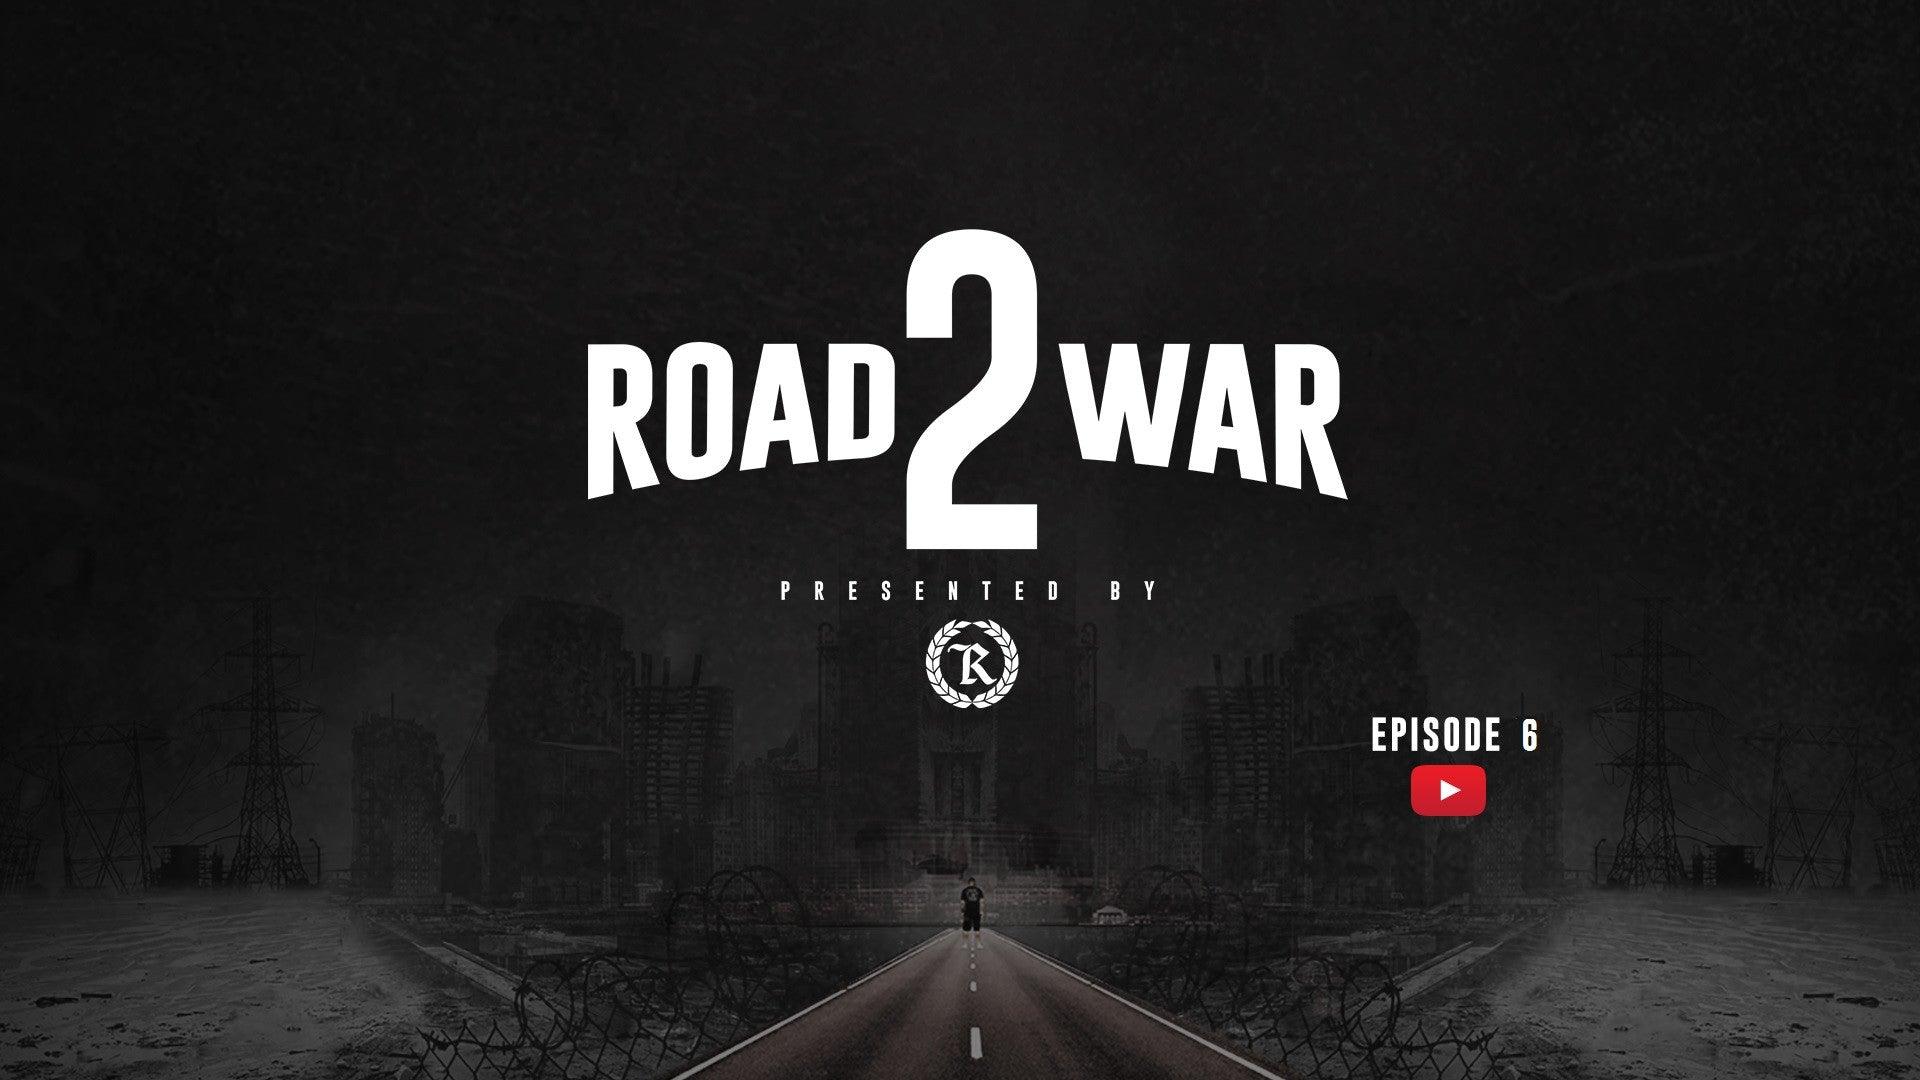 Road 2 War || Episode 6 || Nate Diaz || Conan O'Brien - Represent Ltd.™